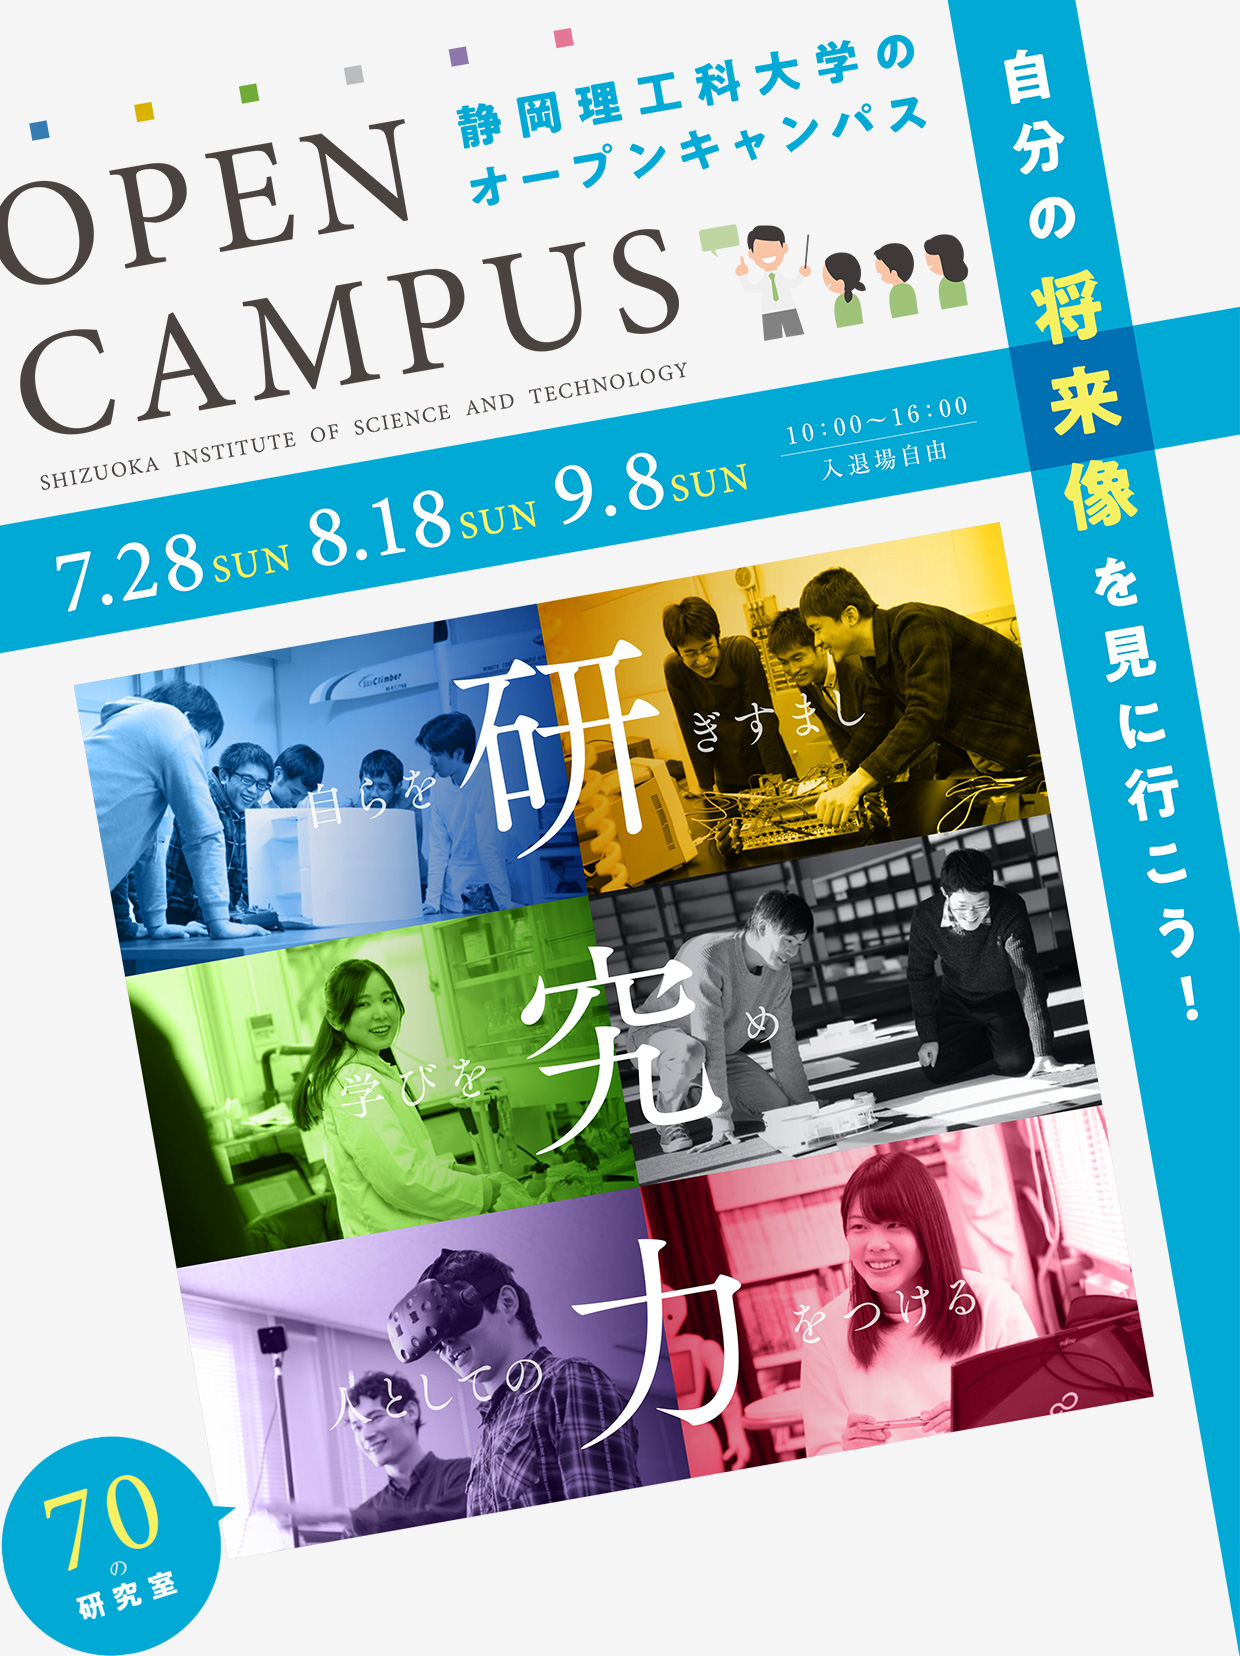 静岡理工科大学のオープンキャンパス